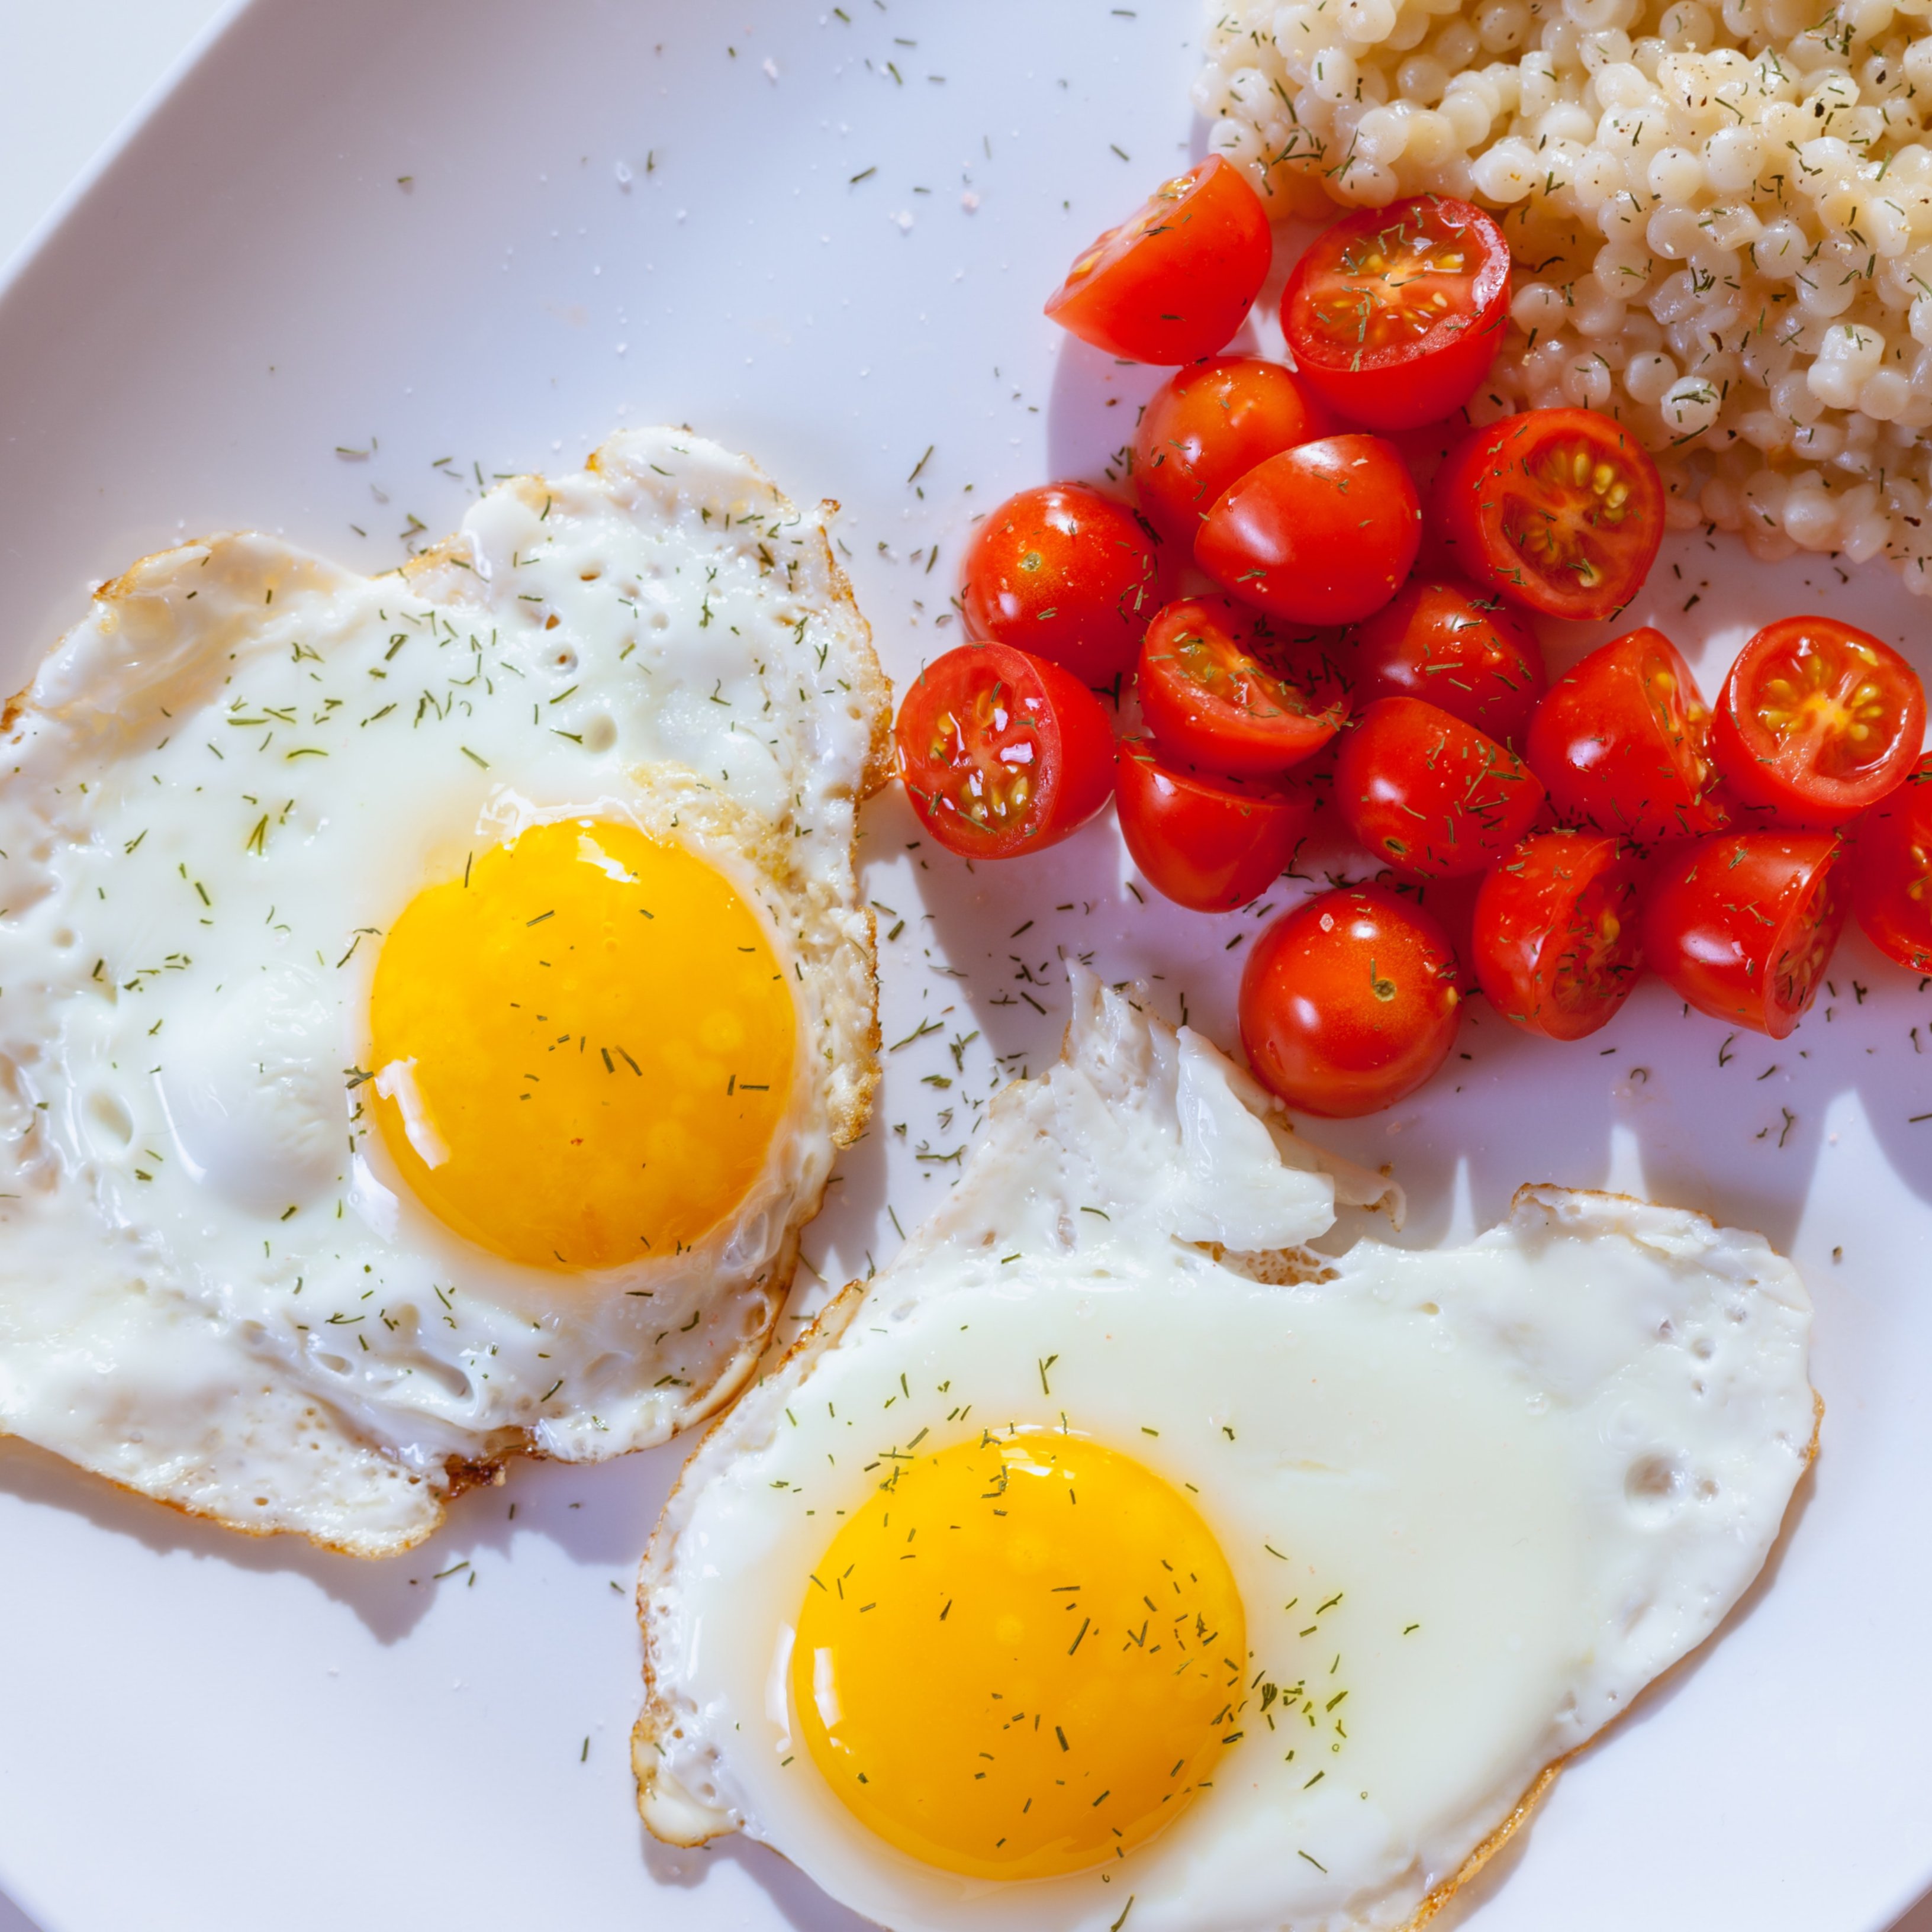 Les maneres més saludables de cuinar ous